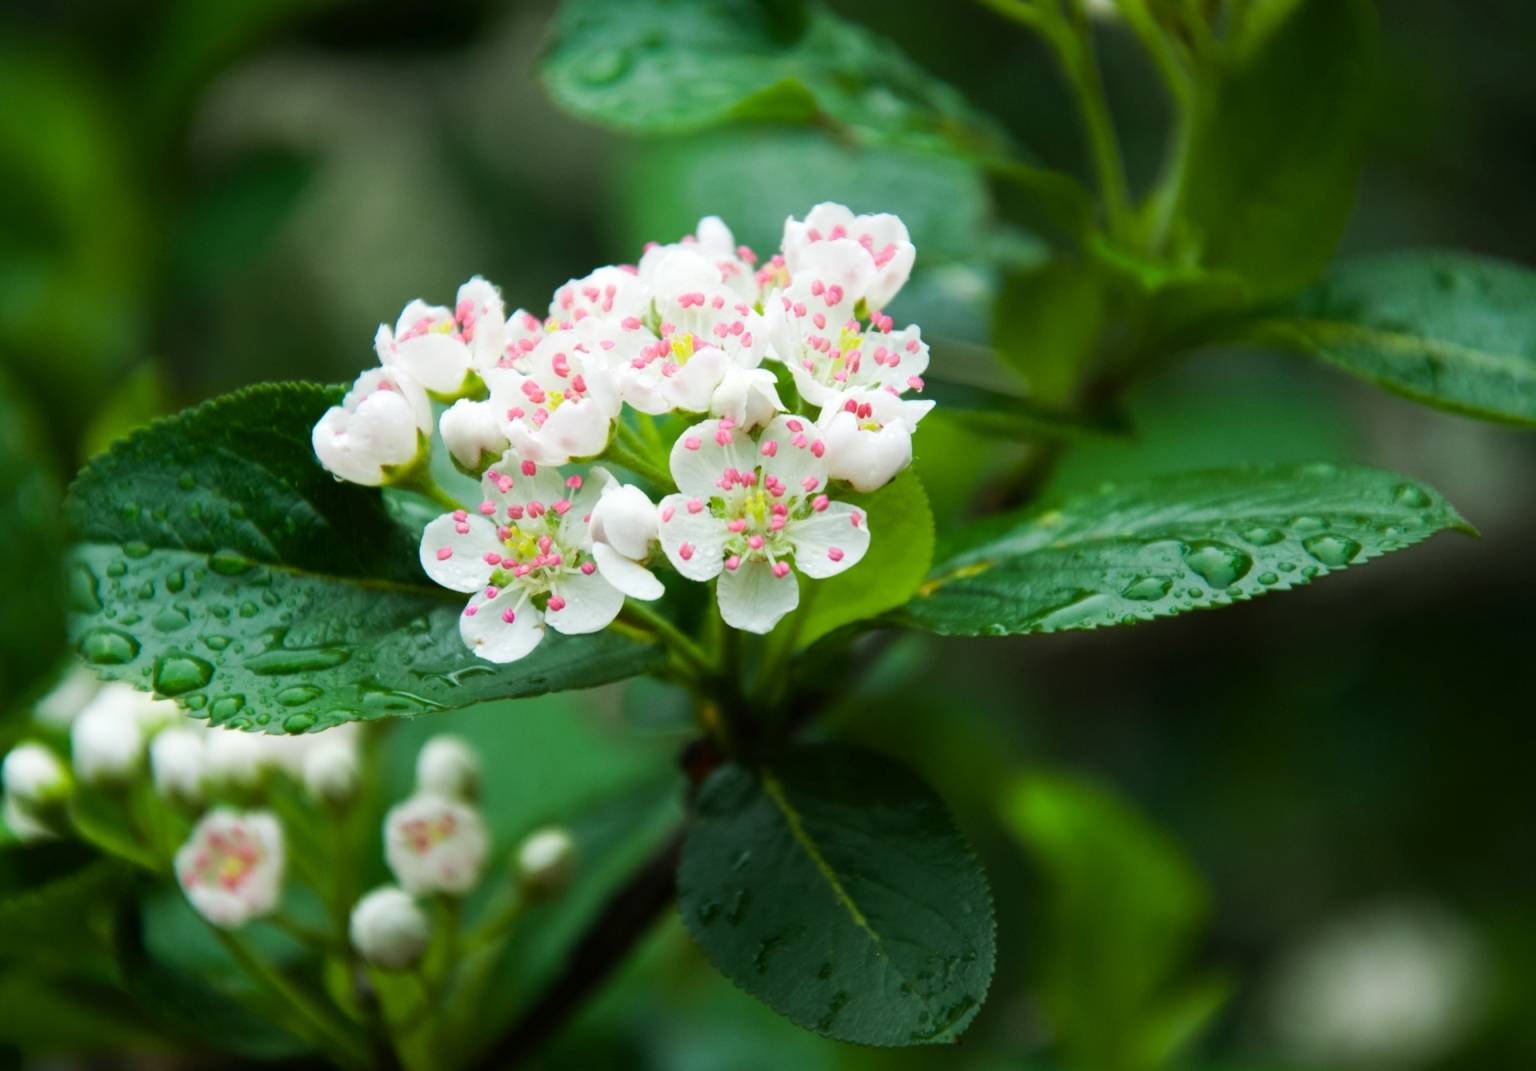 Biało-różowy kwiat aronii na gałęzi skropionej przez deszcz. Jakie właściwości lecznicze ma aronia?